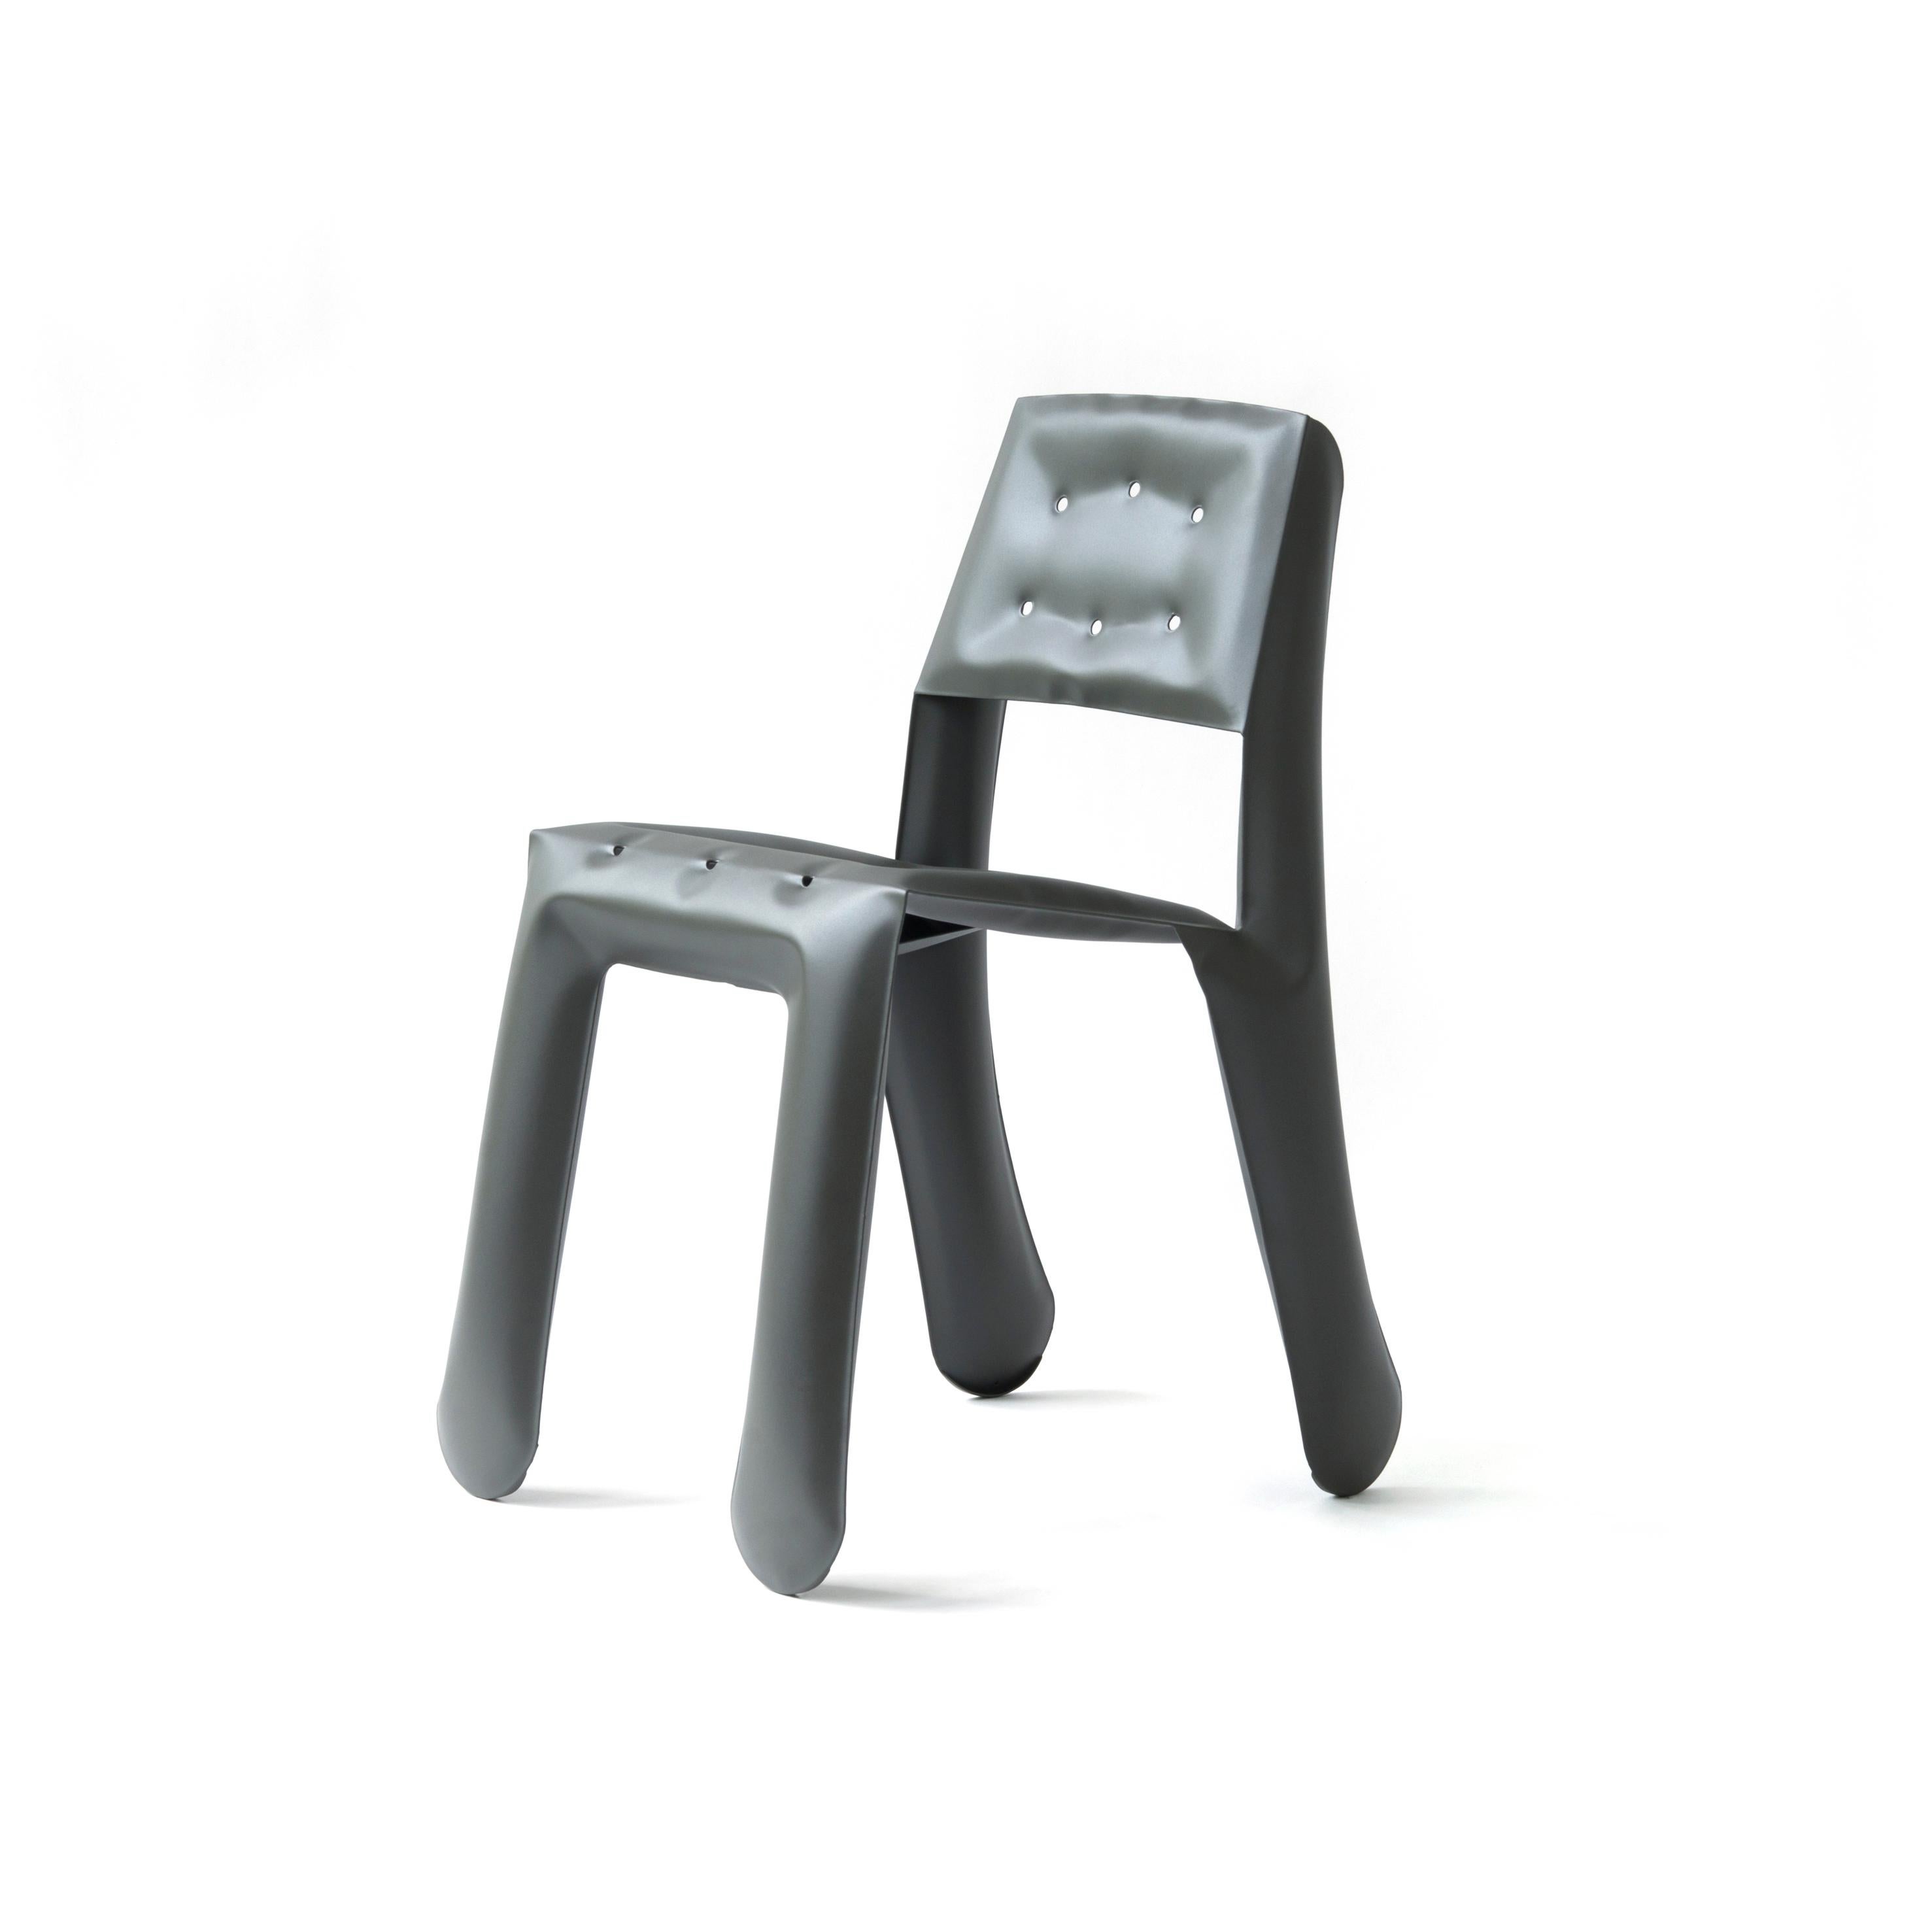 Chaise sculpturale Umbra Grey Aluminum Chippensteel 0.5 de Zieta
Dimensions : P 58 x L 46 x H 80 cm 
MATERIAL : Aluminium. 
Finition : Revêtement en poudre. Finition mate. 
Disponible dans les couleurs suivantes : blanc mat, beige, noir, bleu-gris,